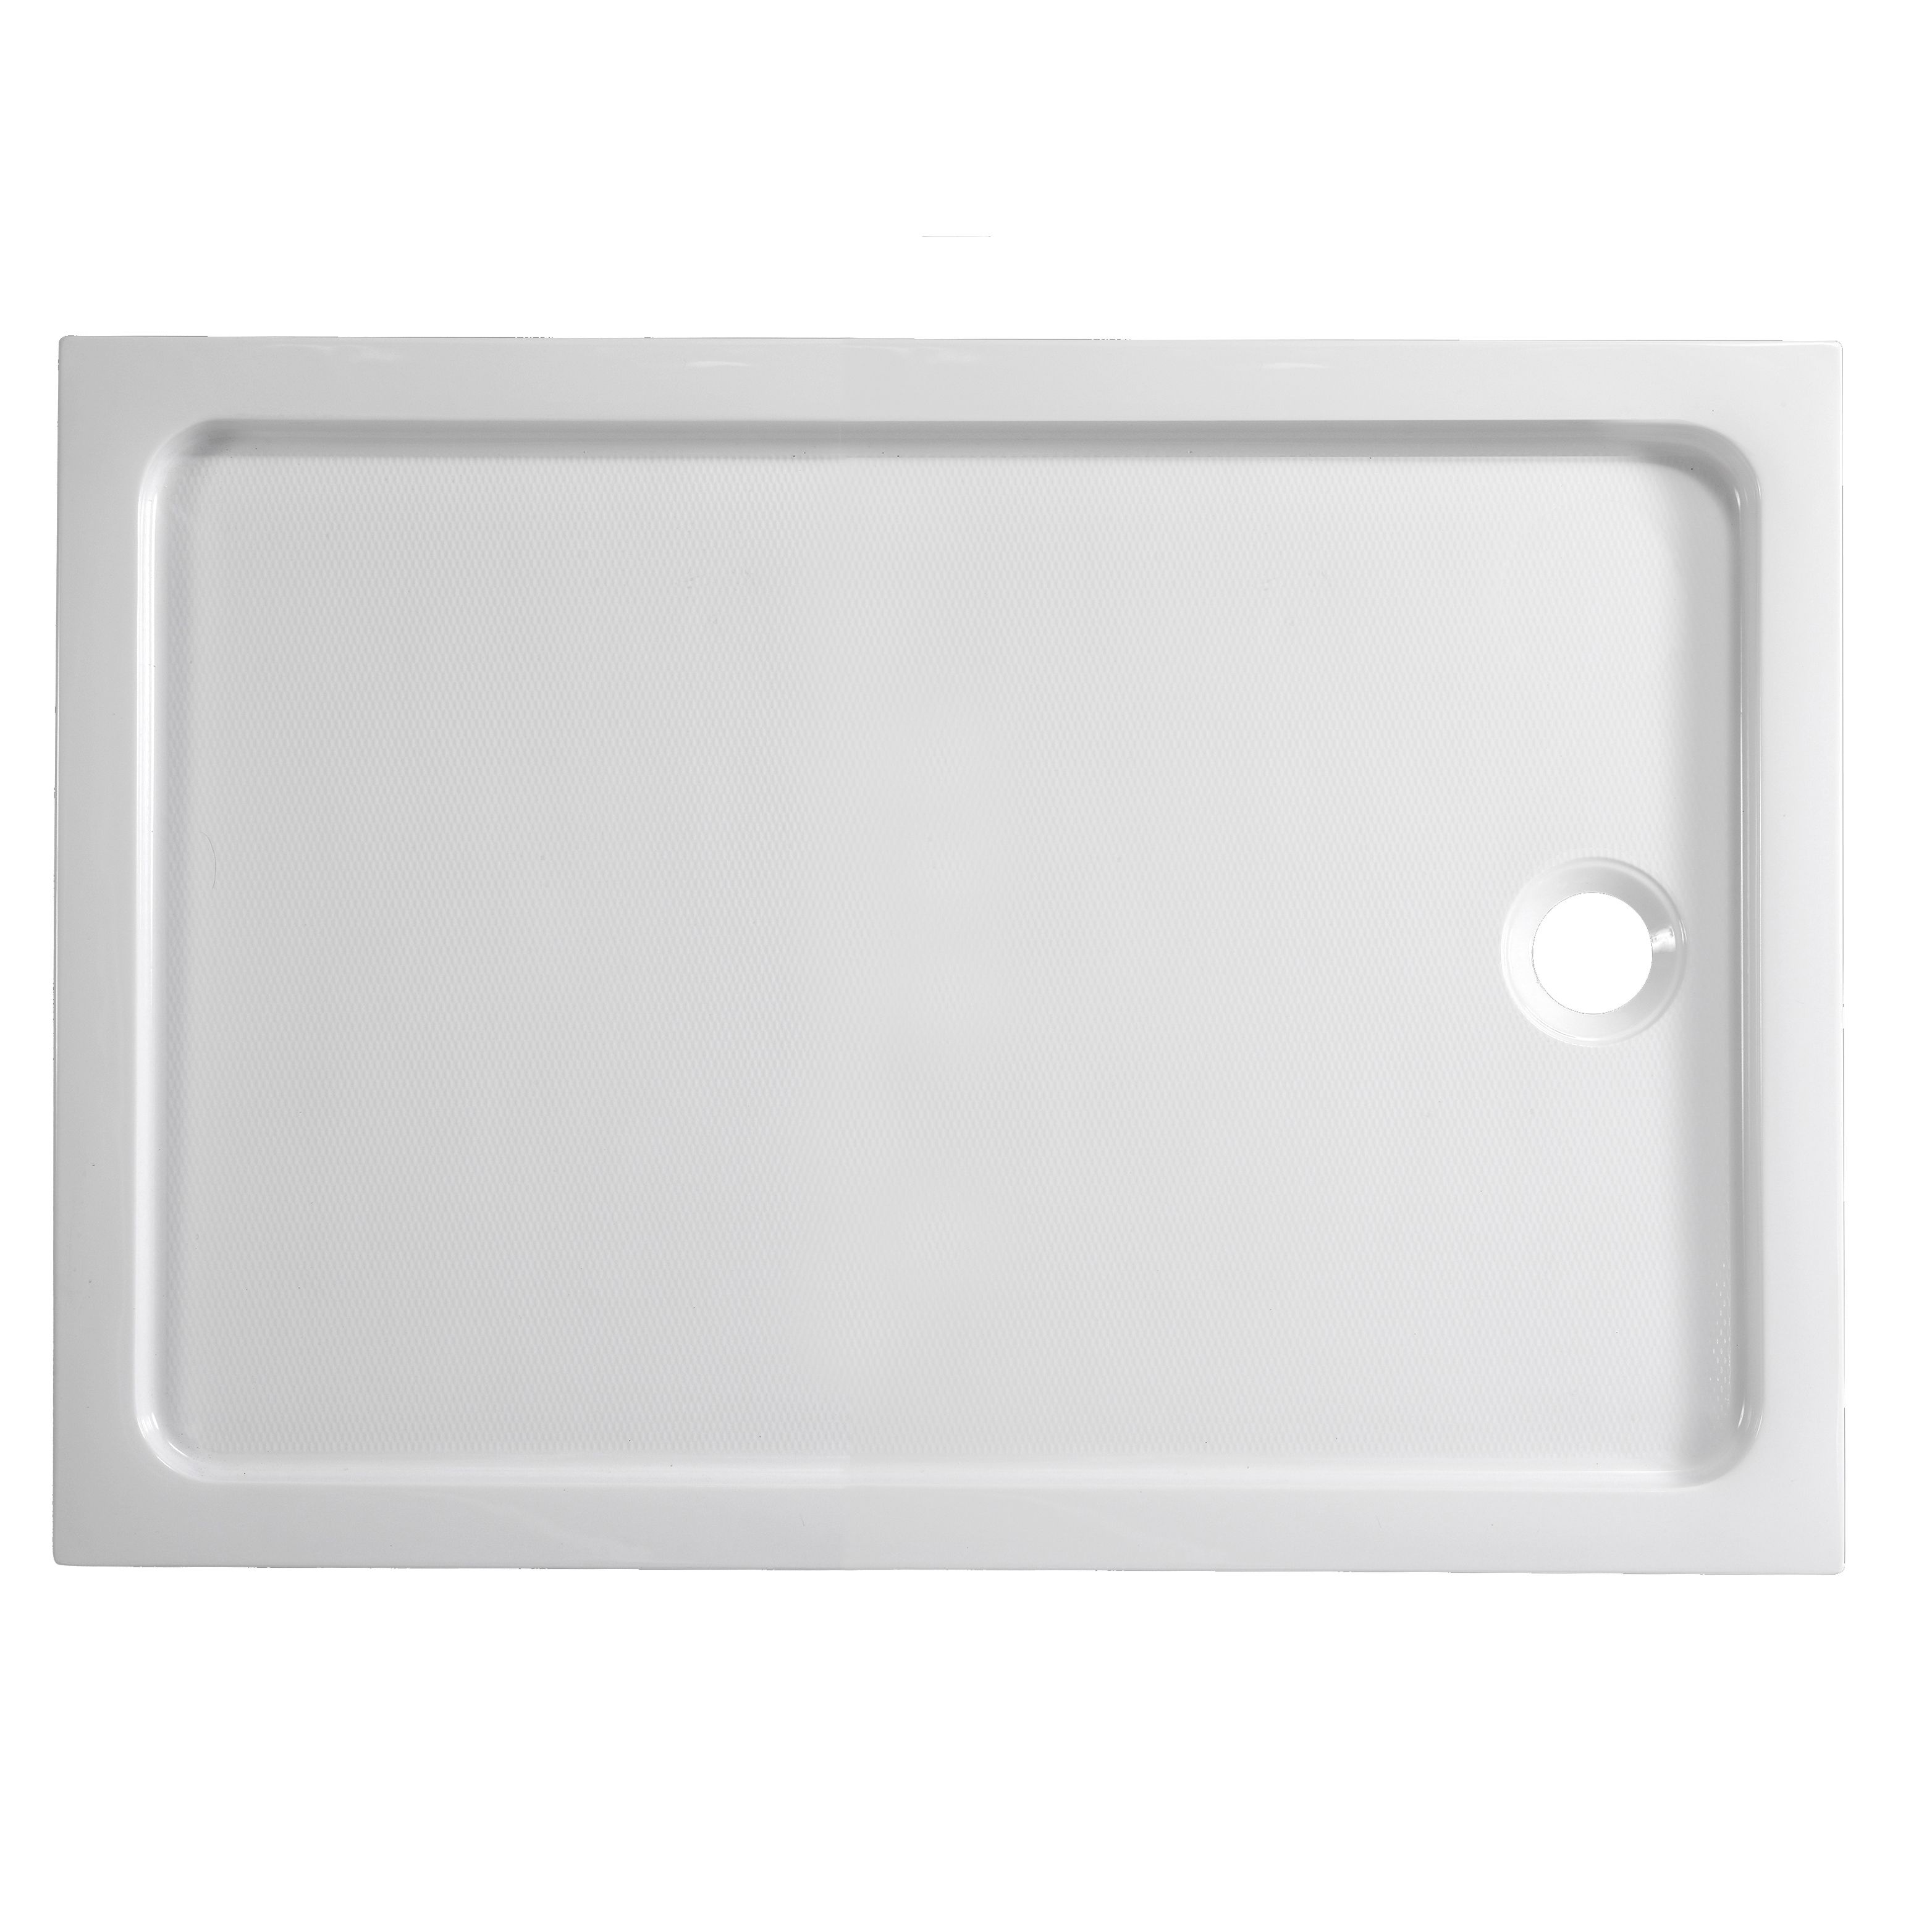 Dommel Gloss White Rectangular End drain Shower tray (L)100cm (W)80cm (H)15cm